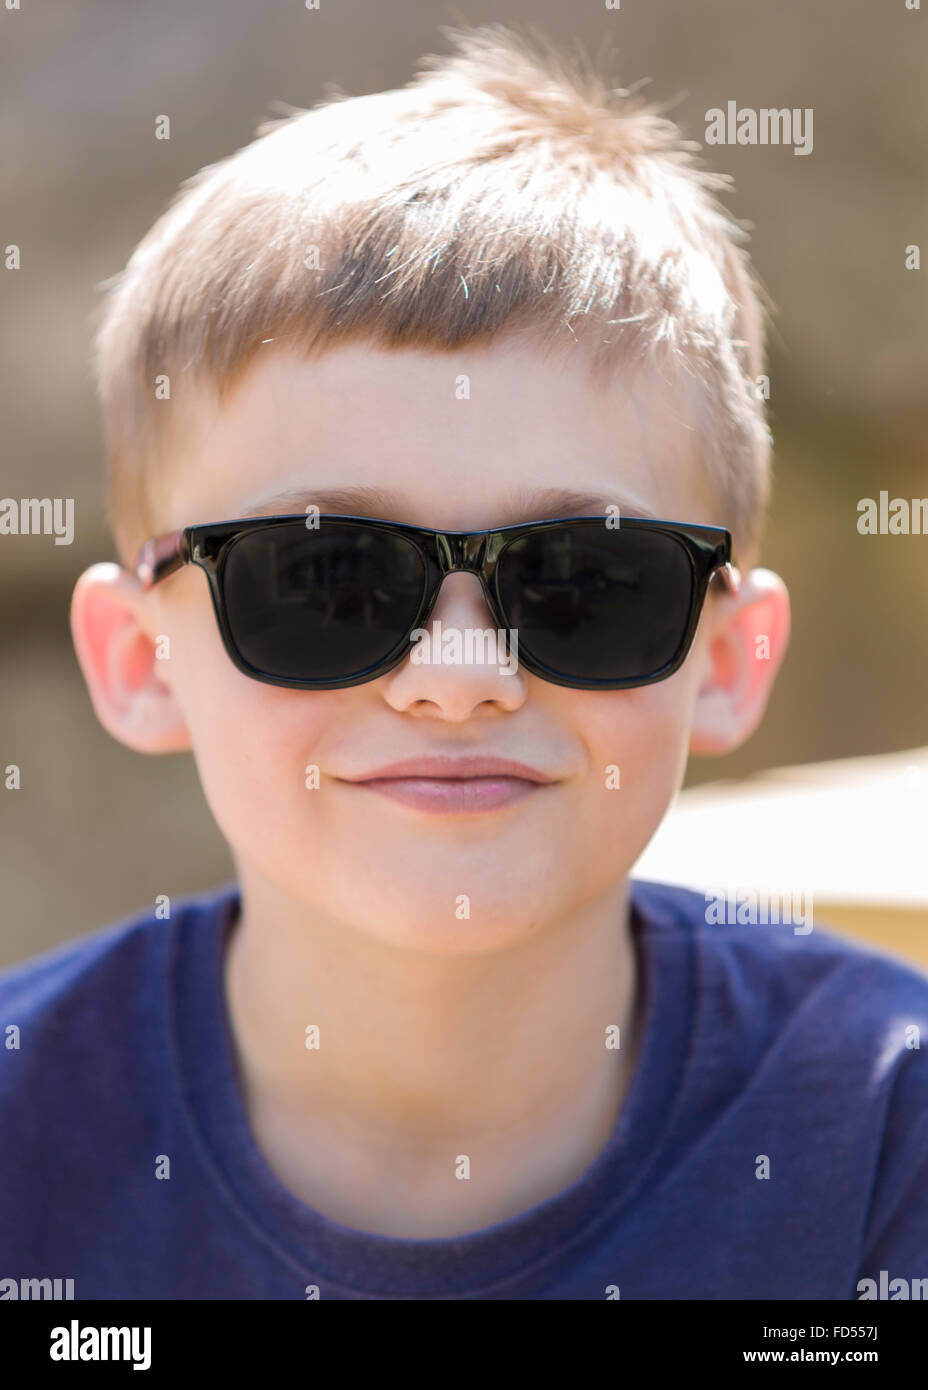 Ragazzo che indossa gli occhiali da sole per esterno ritratto modello di rilascio: Sì. Proprietà di rilascio: No. Foto Stock